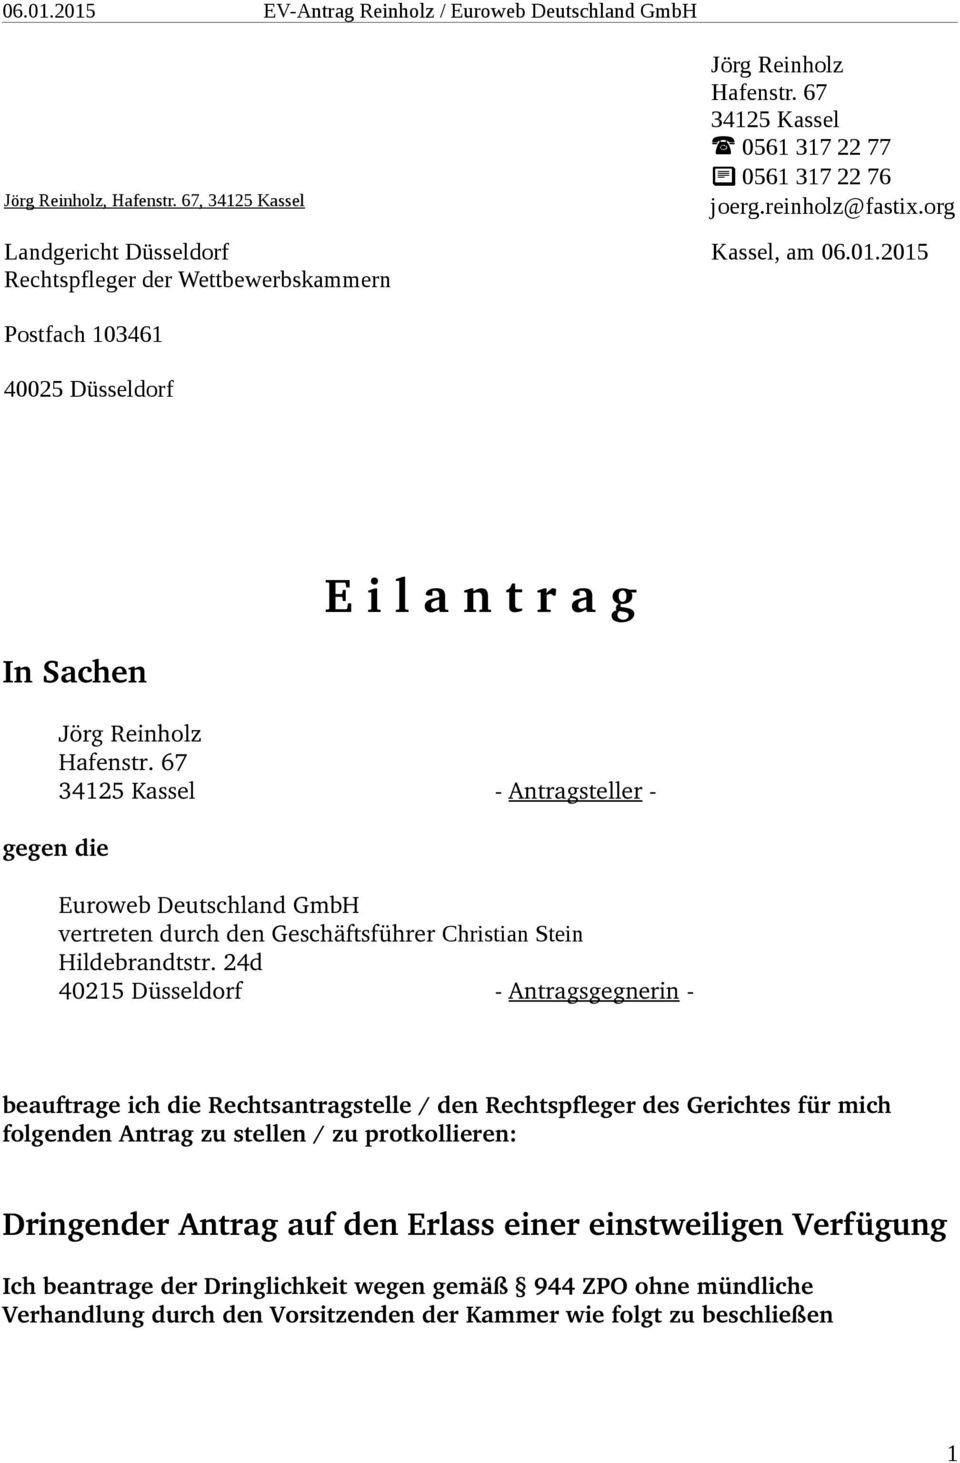 67 34125 Kassel Antragsteller gegen die Euroweb Deutschland GmbH vertreten durch den Geschäftsführer Christian Stein Hildebrandtstr.